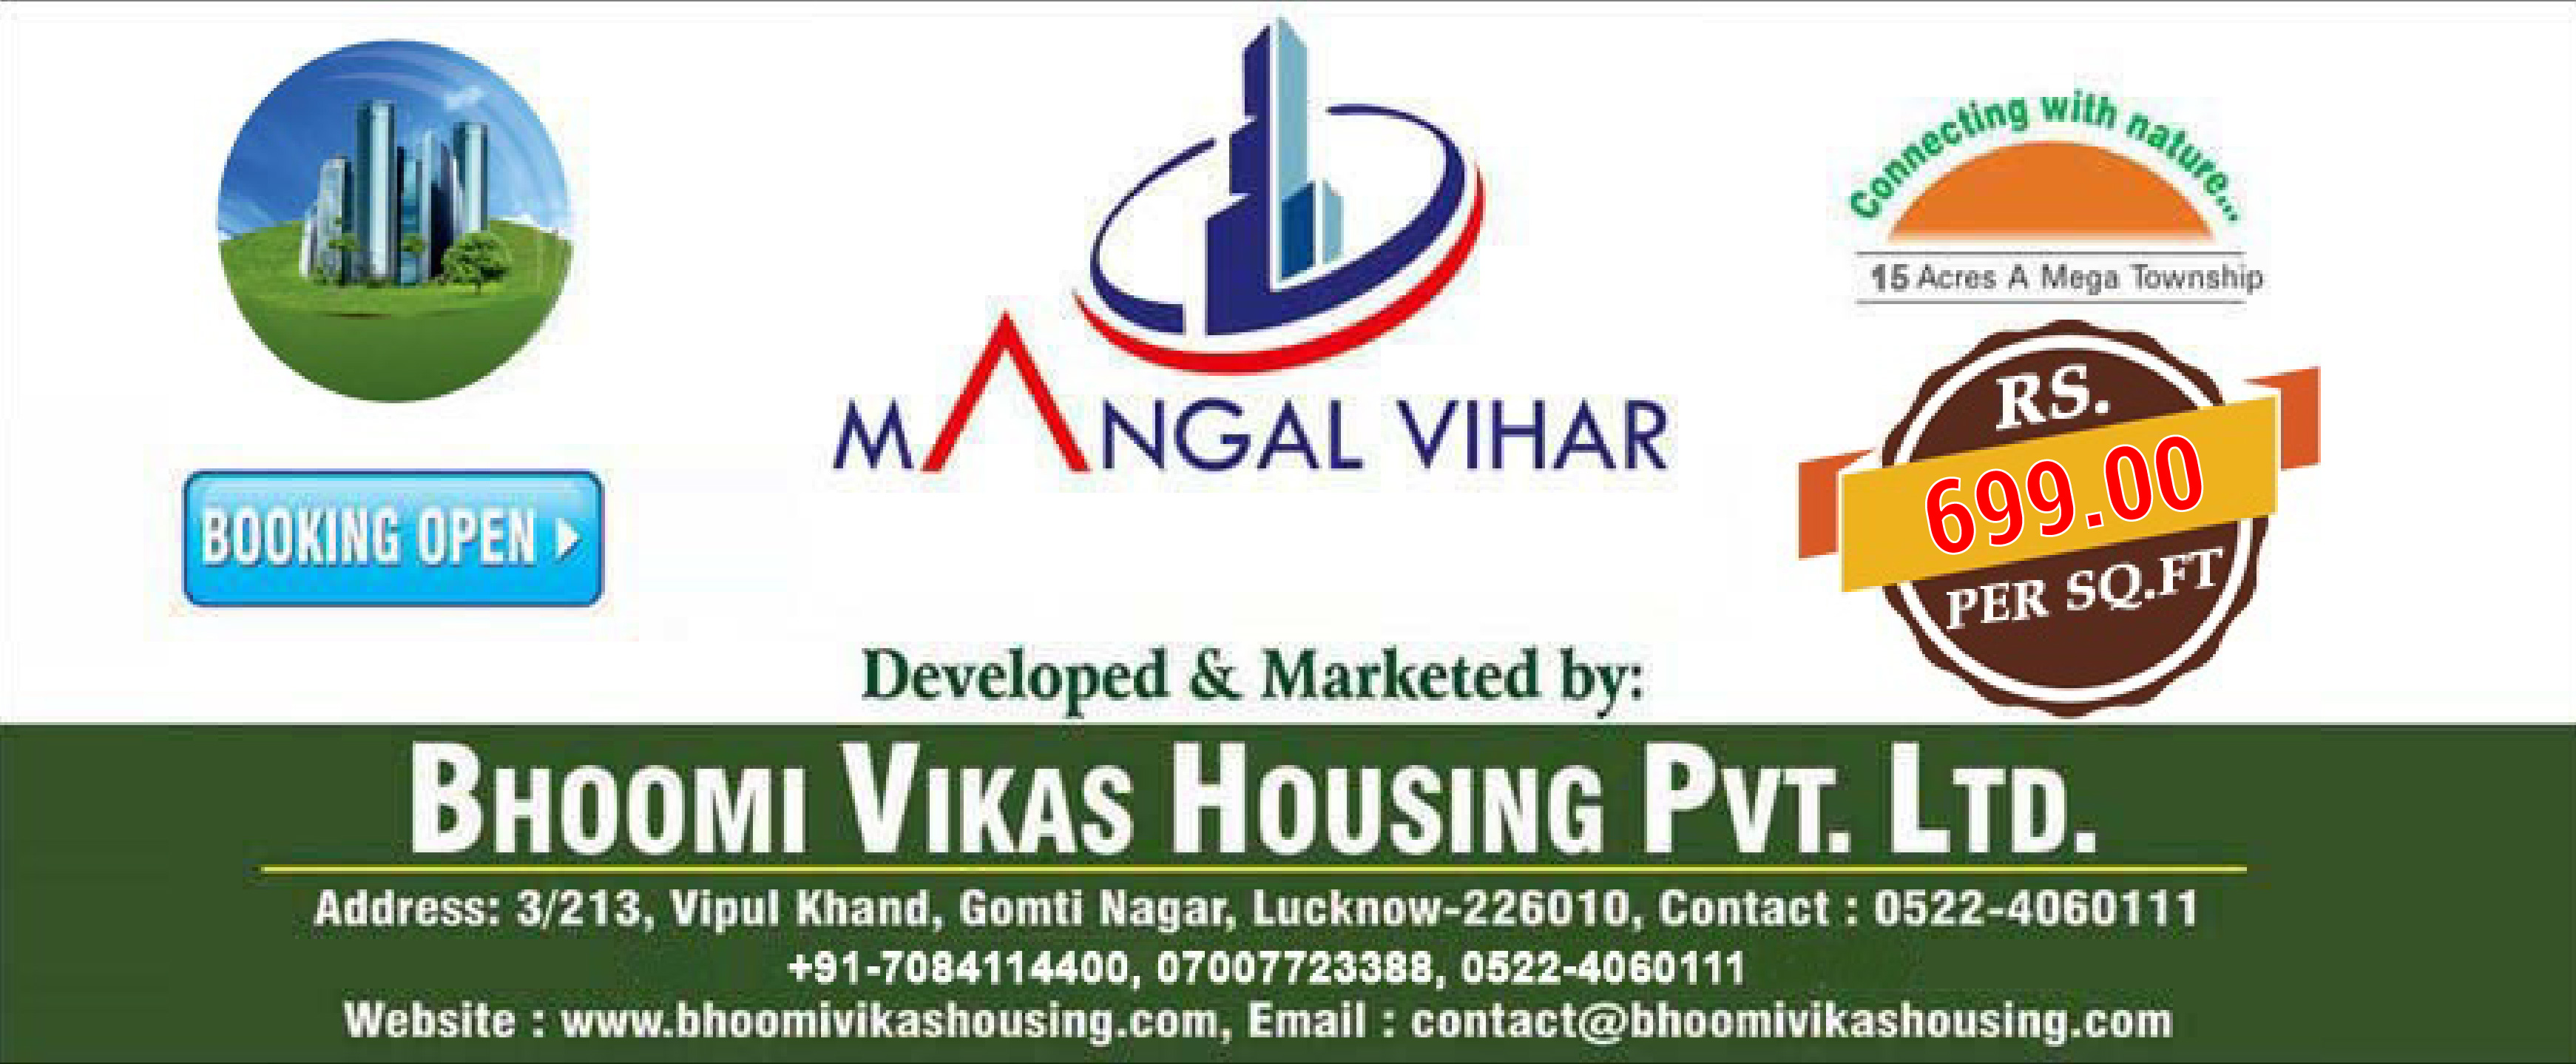 Bhoomi Vikas Housing Pvt. Ltd.